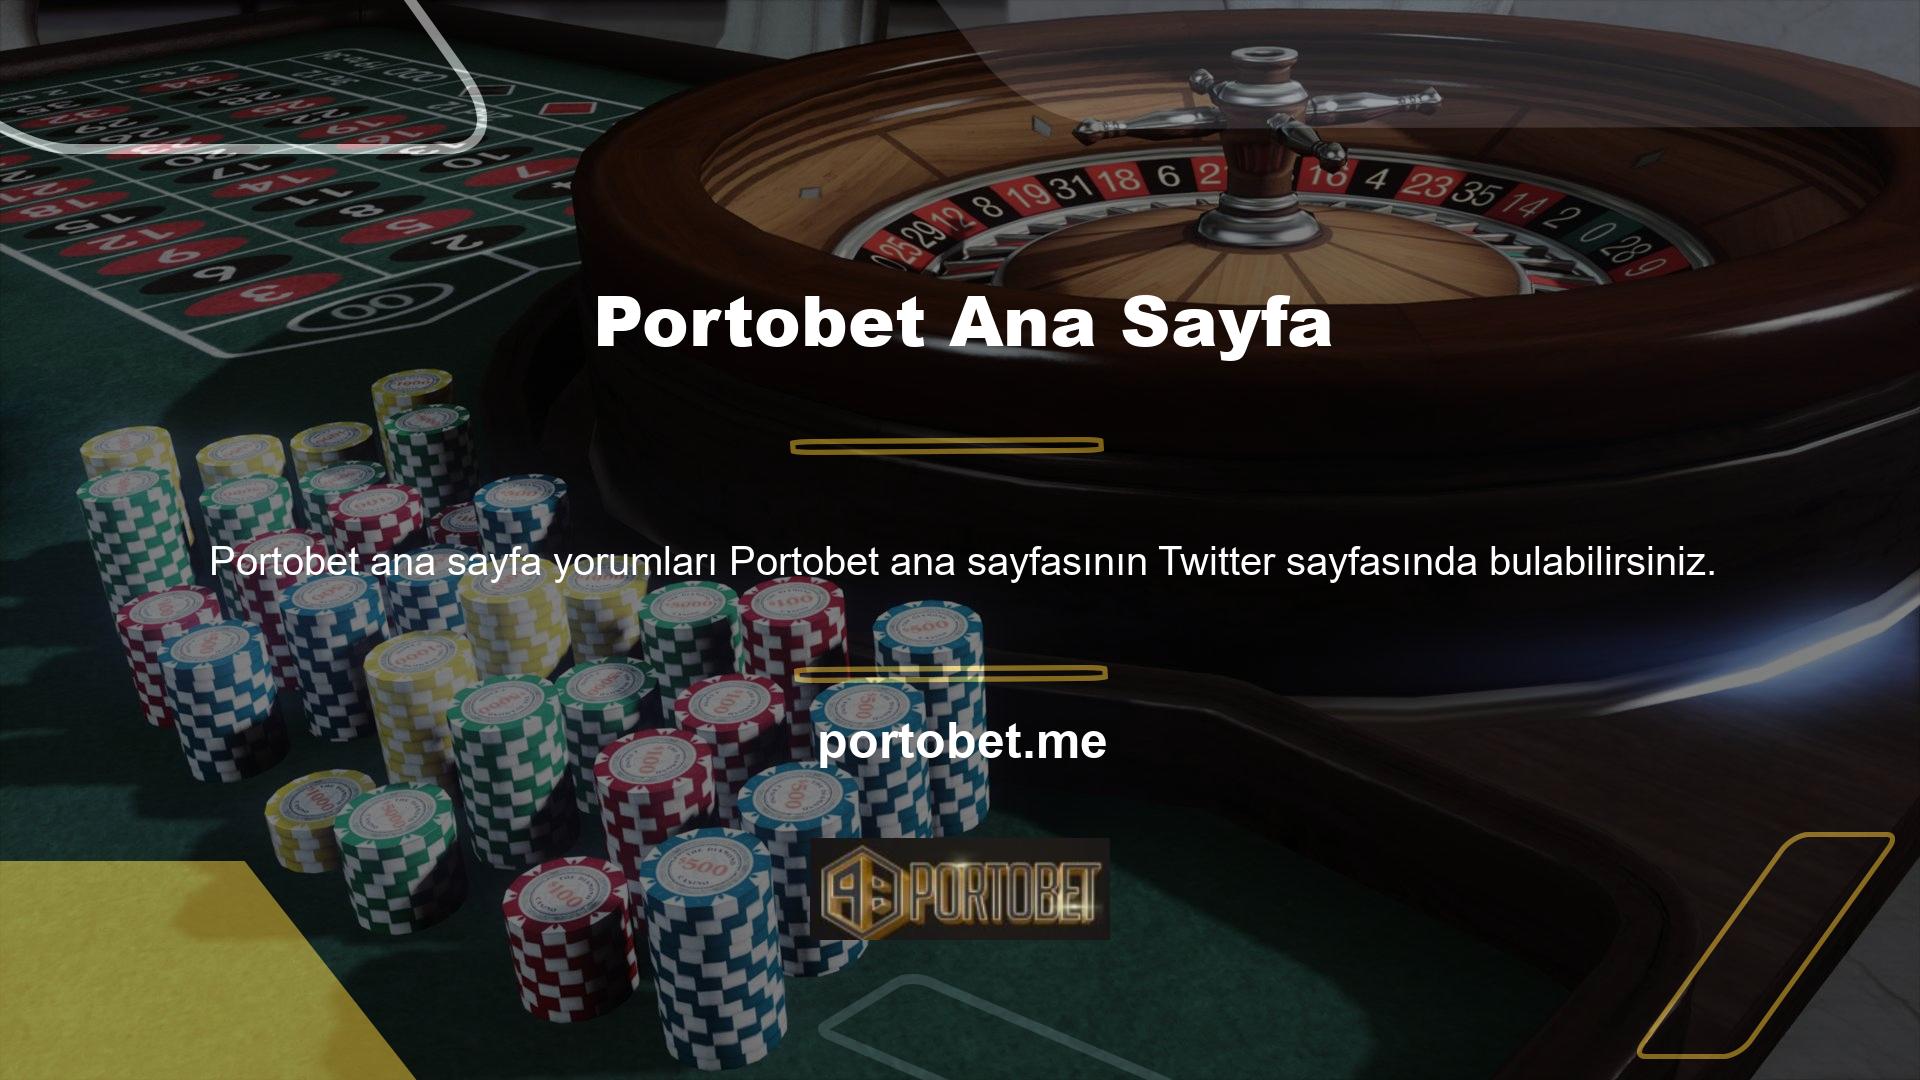 Portobet şu anda faaliyet gösteren bir çevrimiçi casino sitesidir